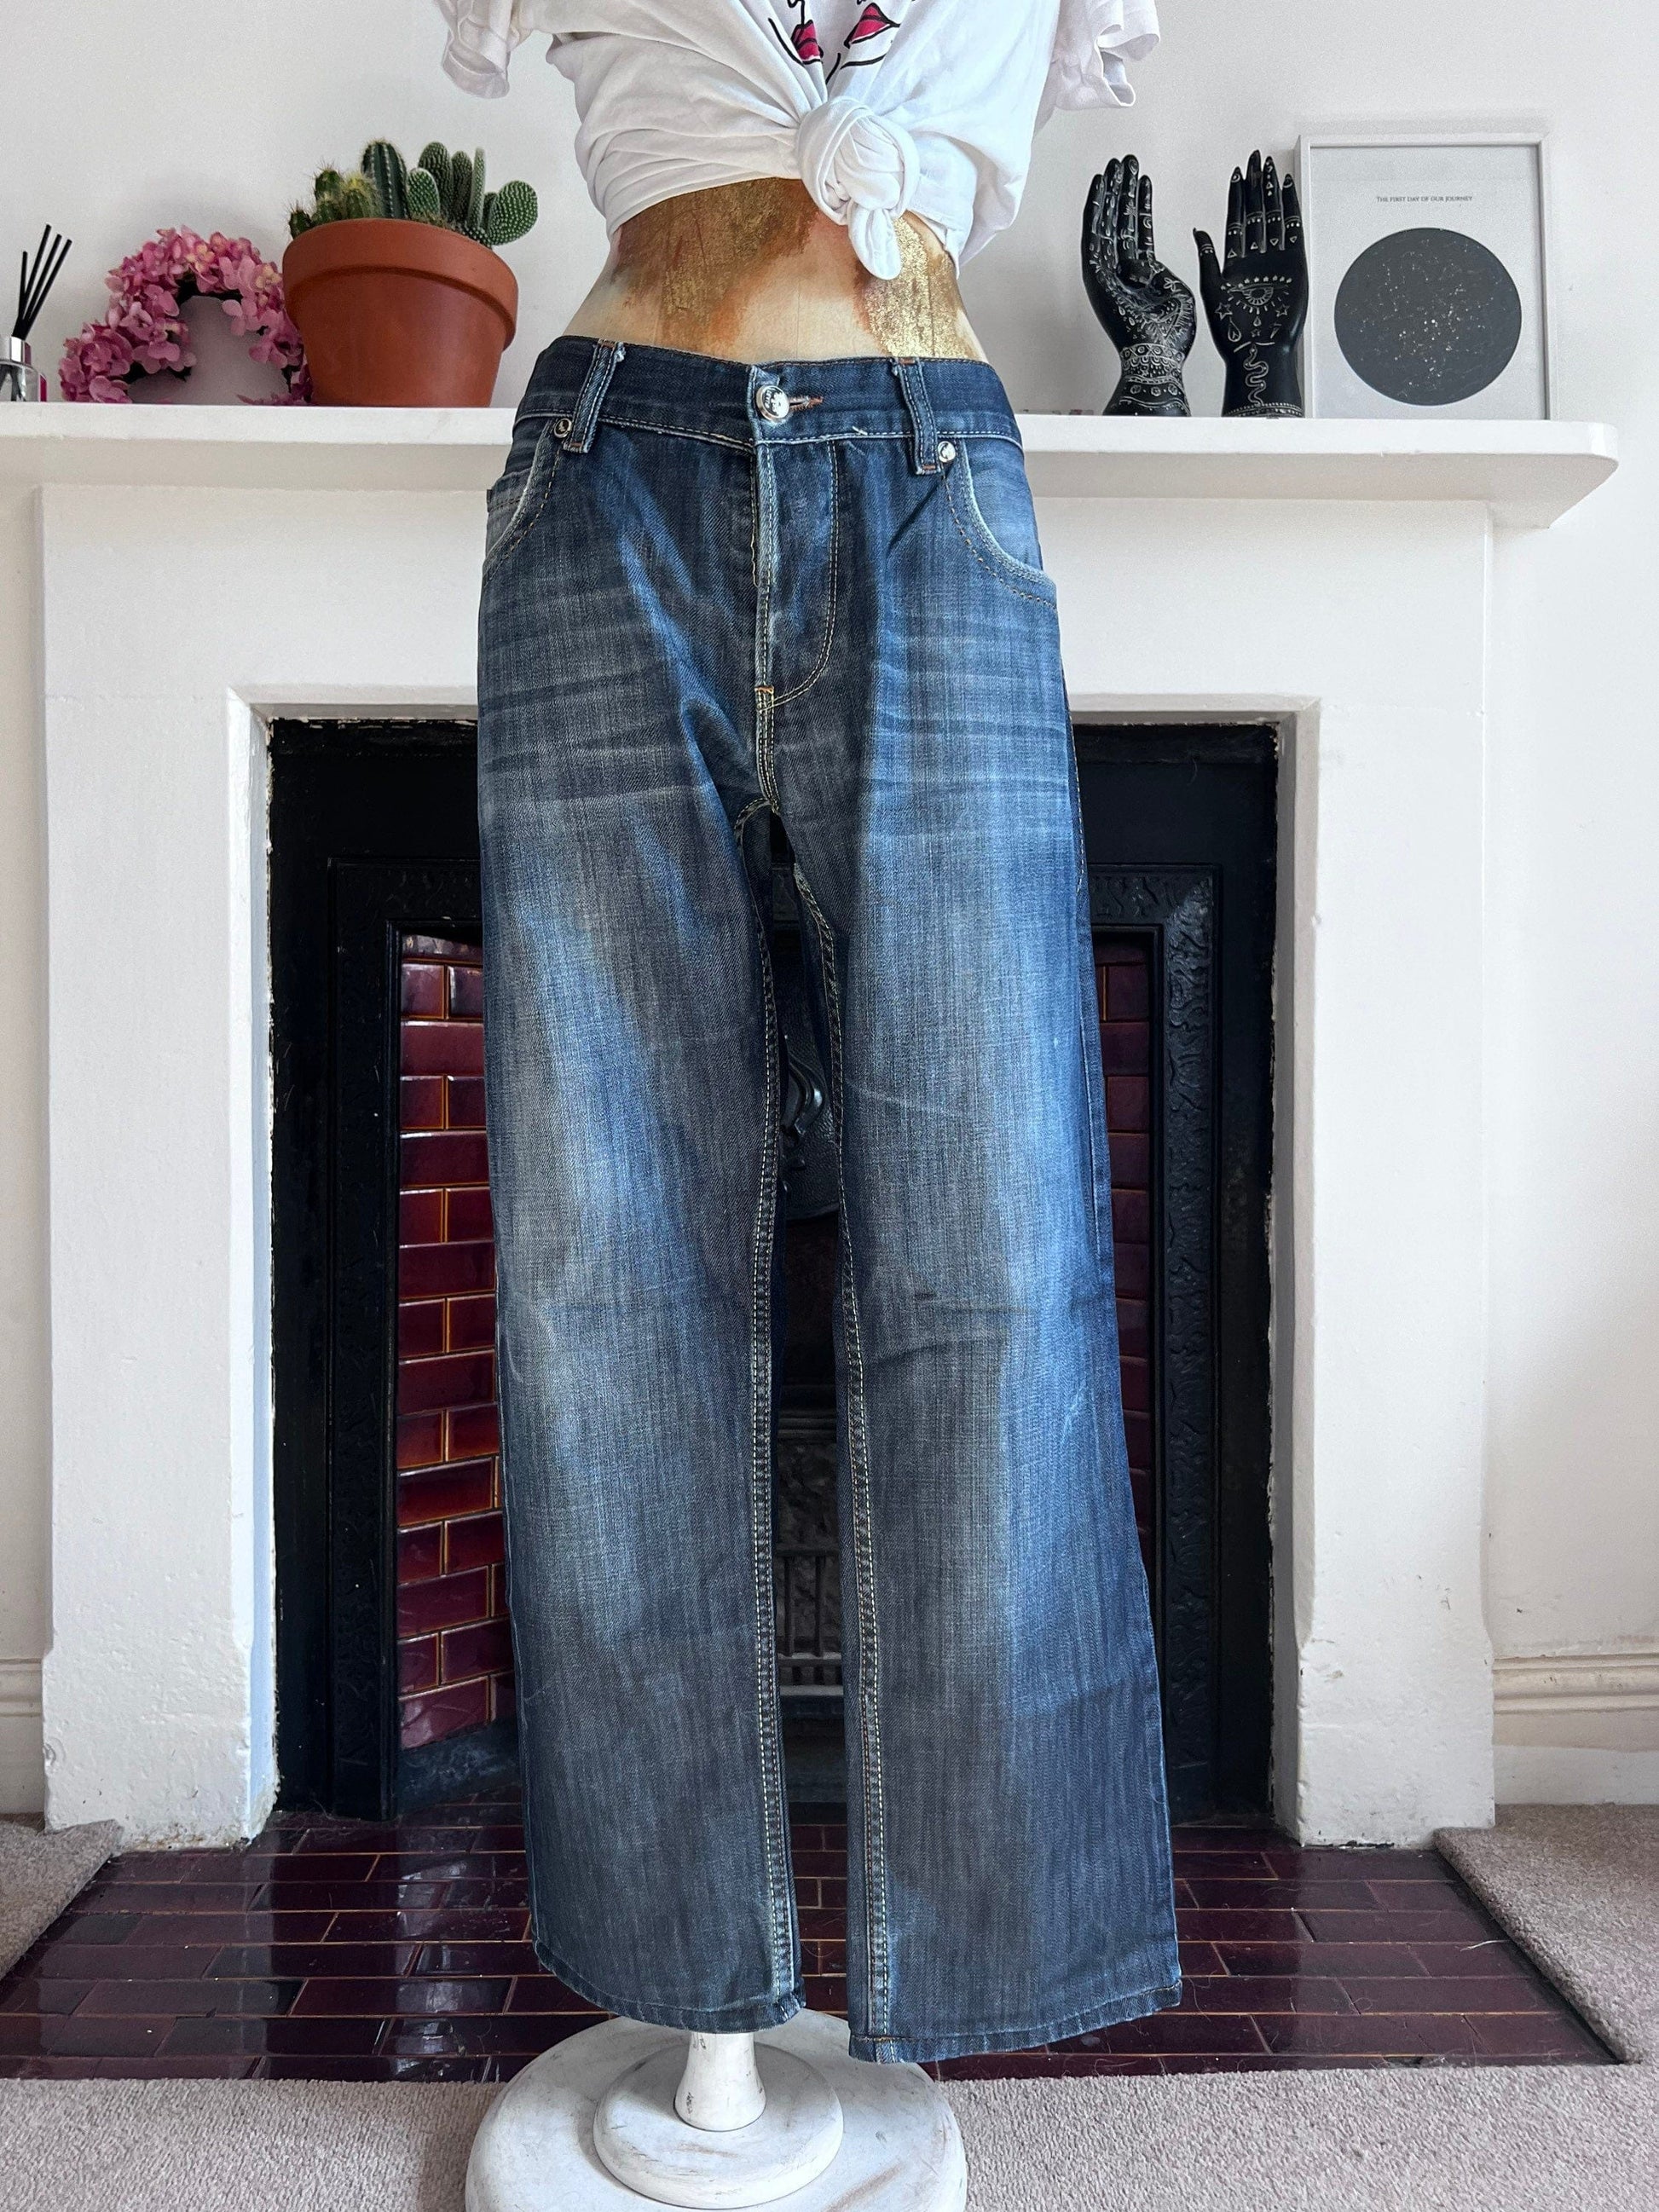 Vintage Levi Jeans Slim Fit - light stone wash denim jeans  - Levi Jeans 506 W34 L32